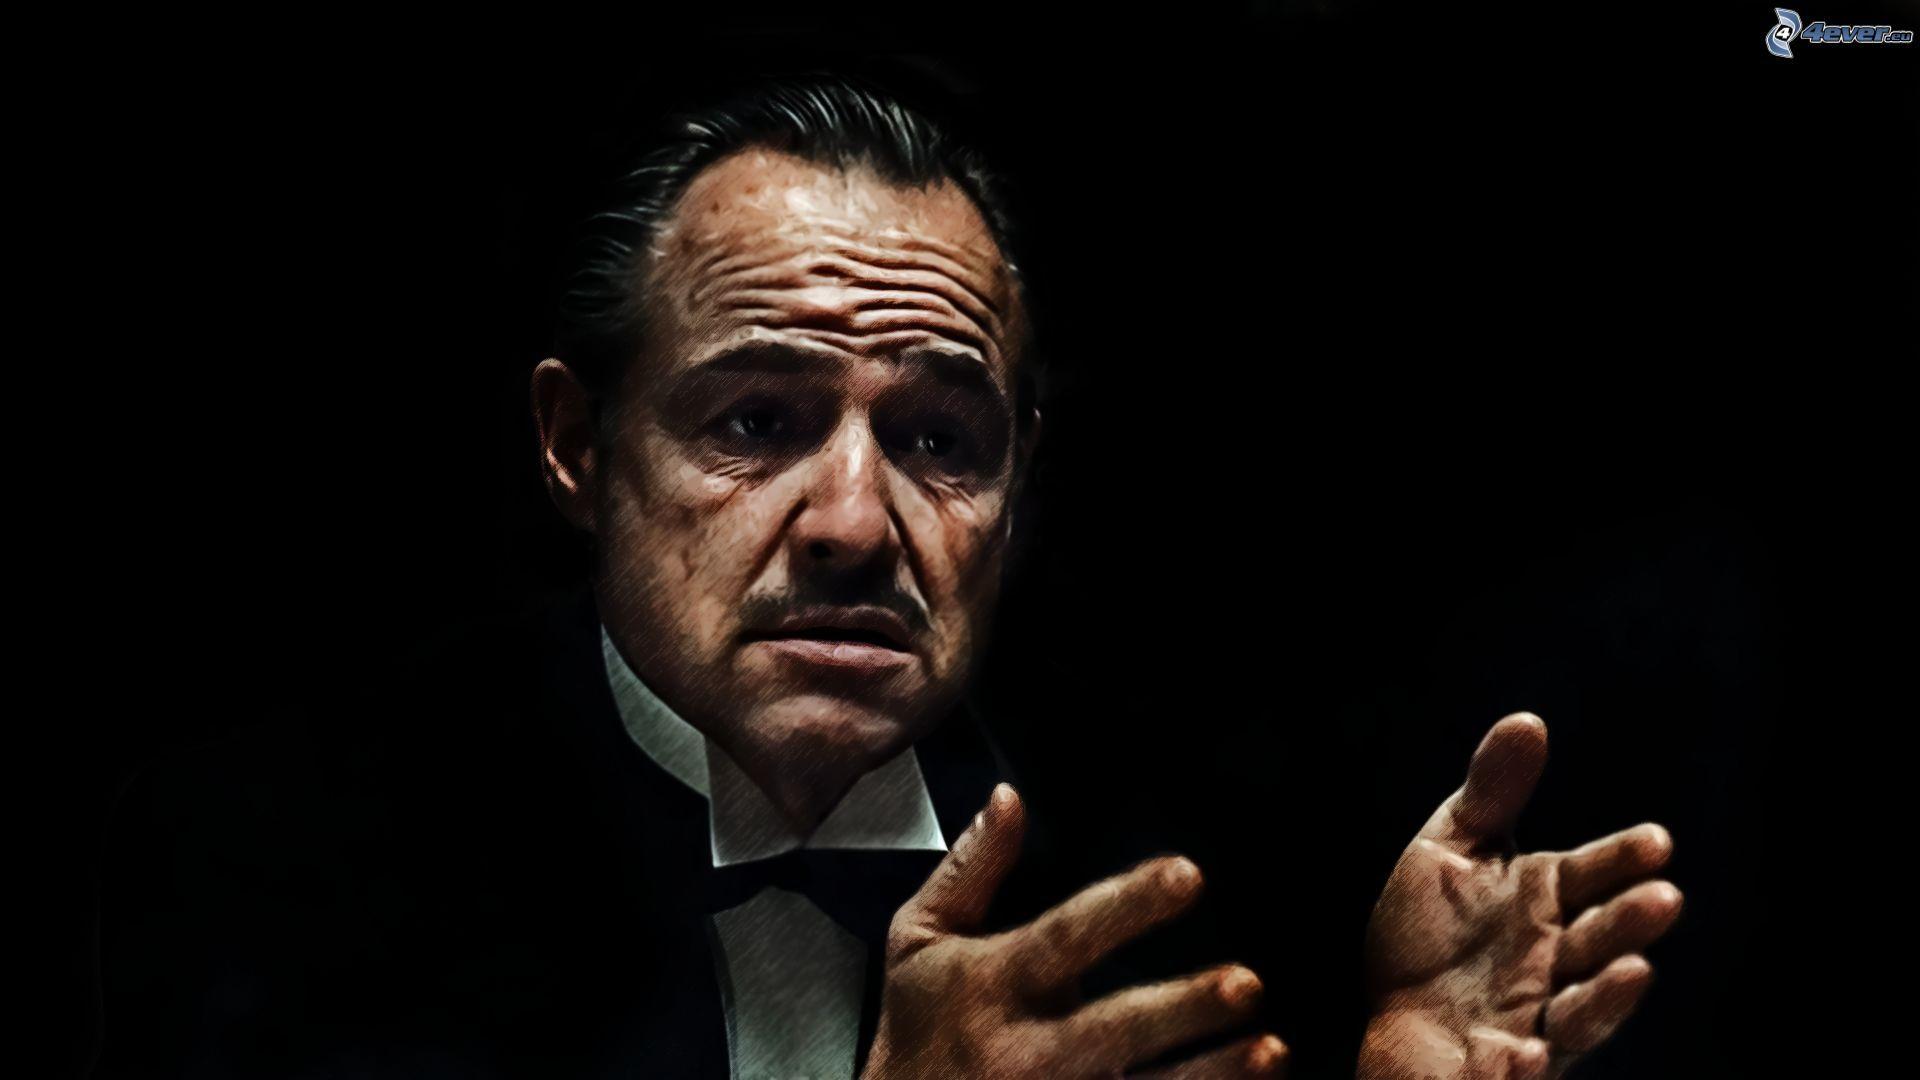 The Godfather Vito Corleone Marlon Brando Remake